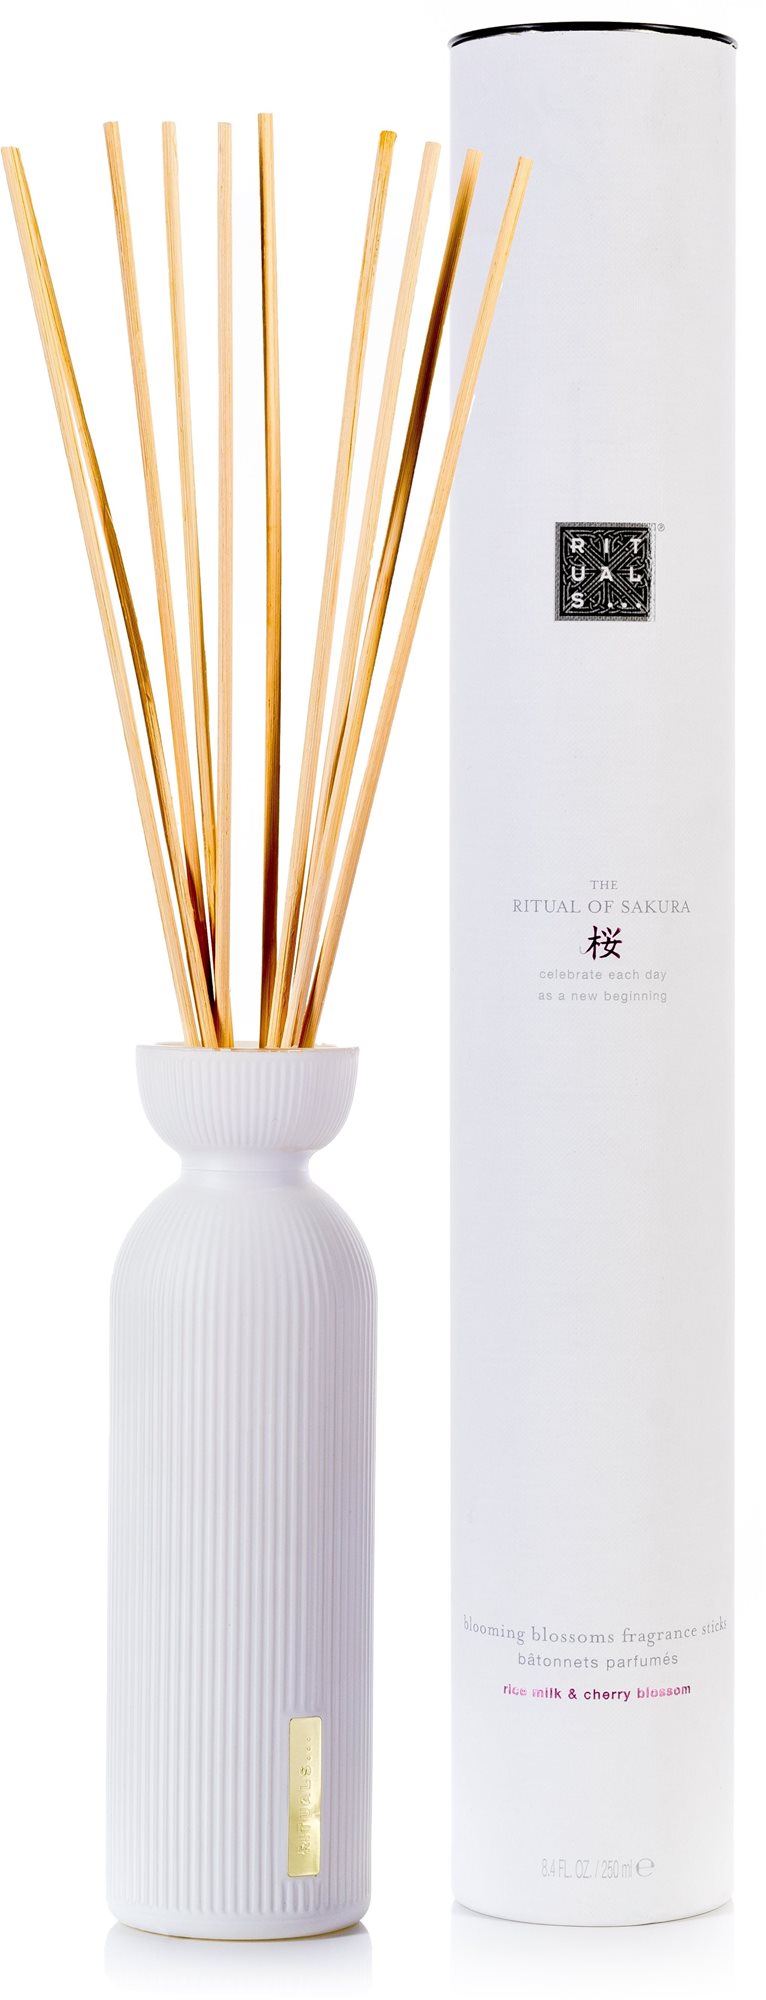 Illatpálca RITUALS The Ritual Of Sakura Fragrance Sticks 250 ml